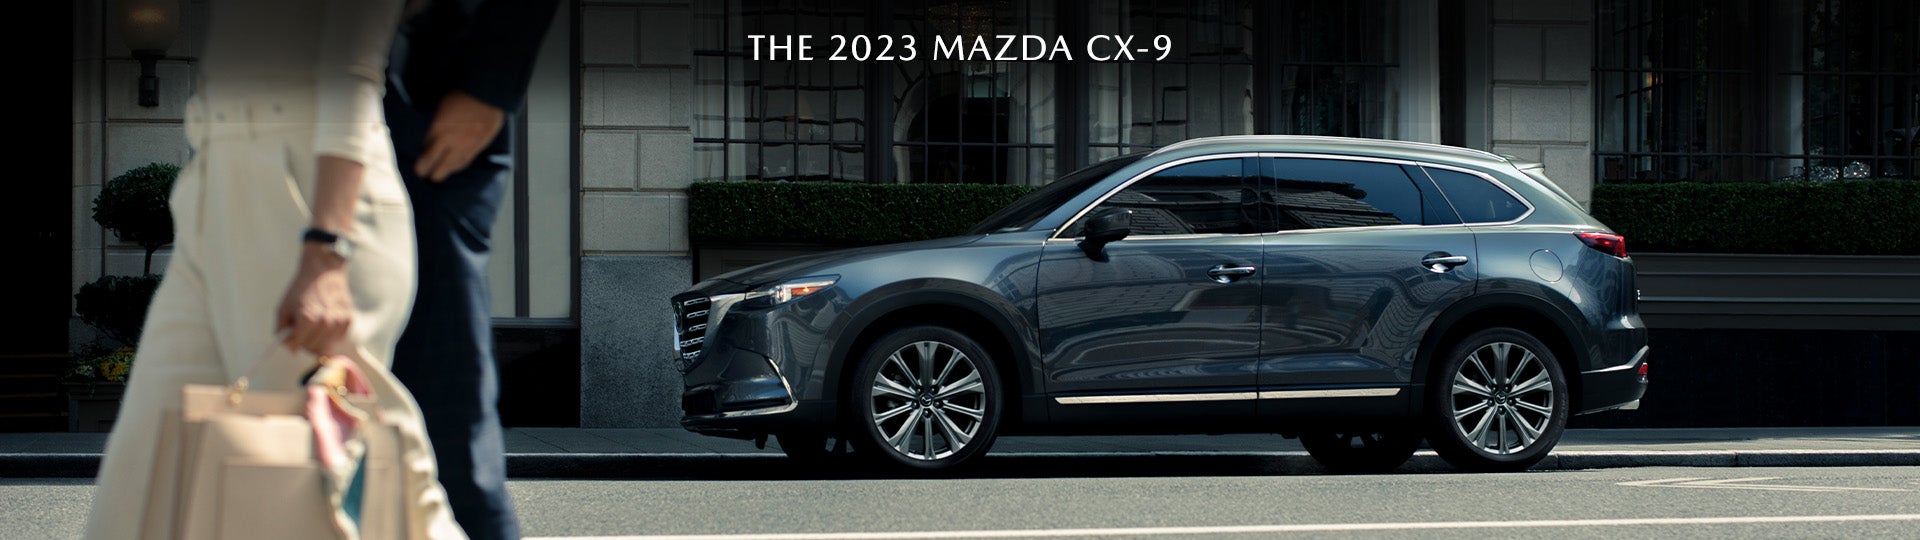 2023 MAZDA CX-9